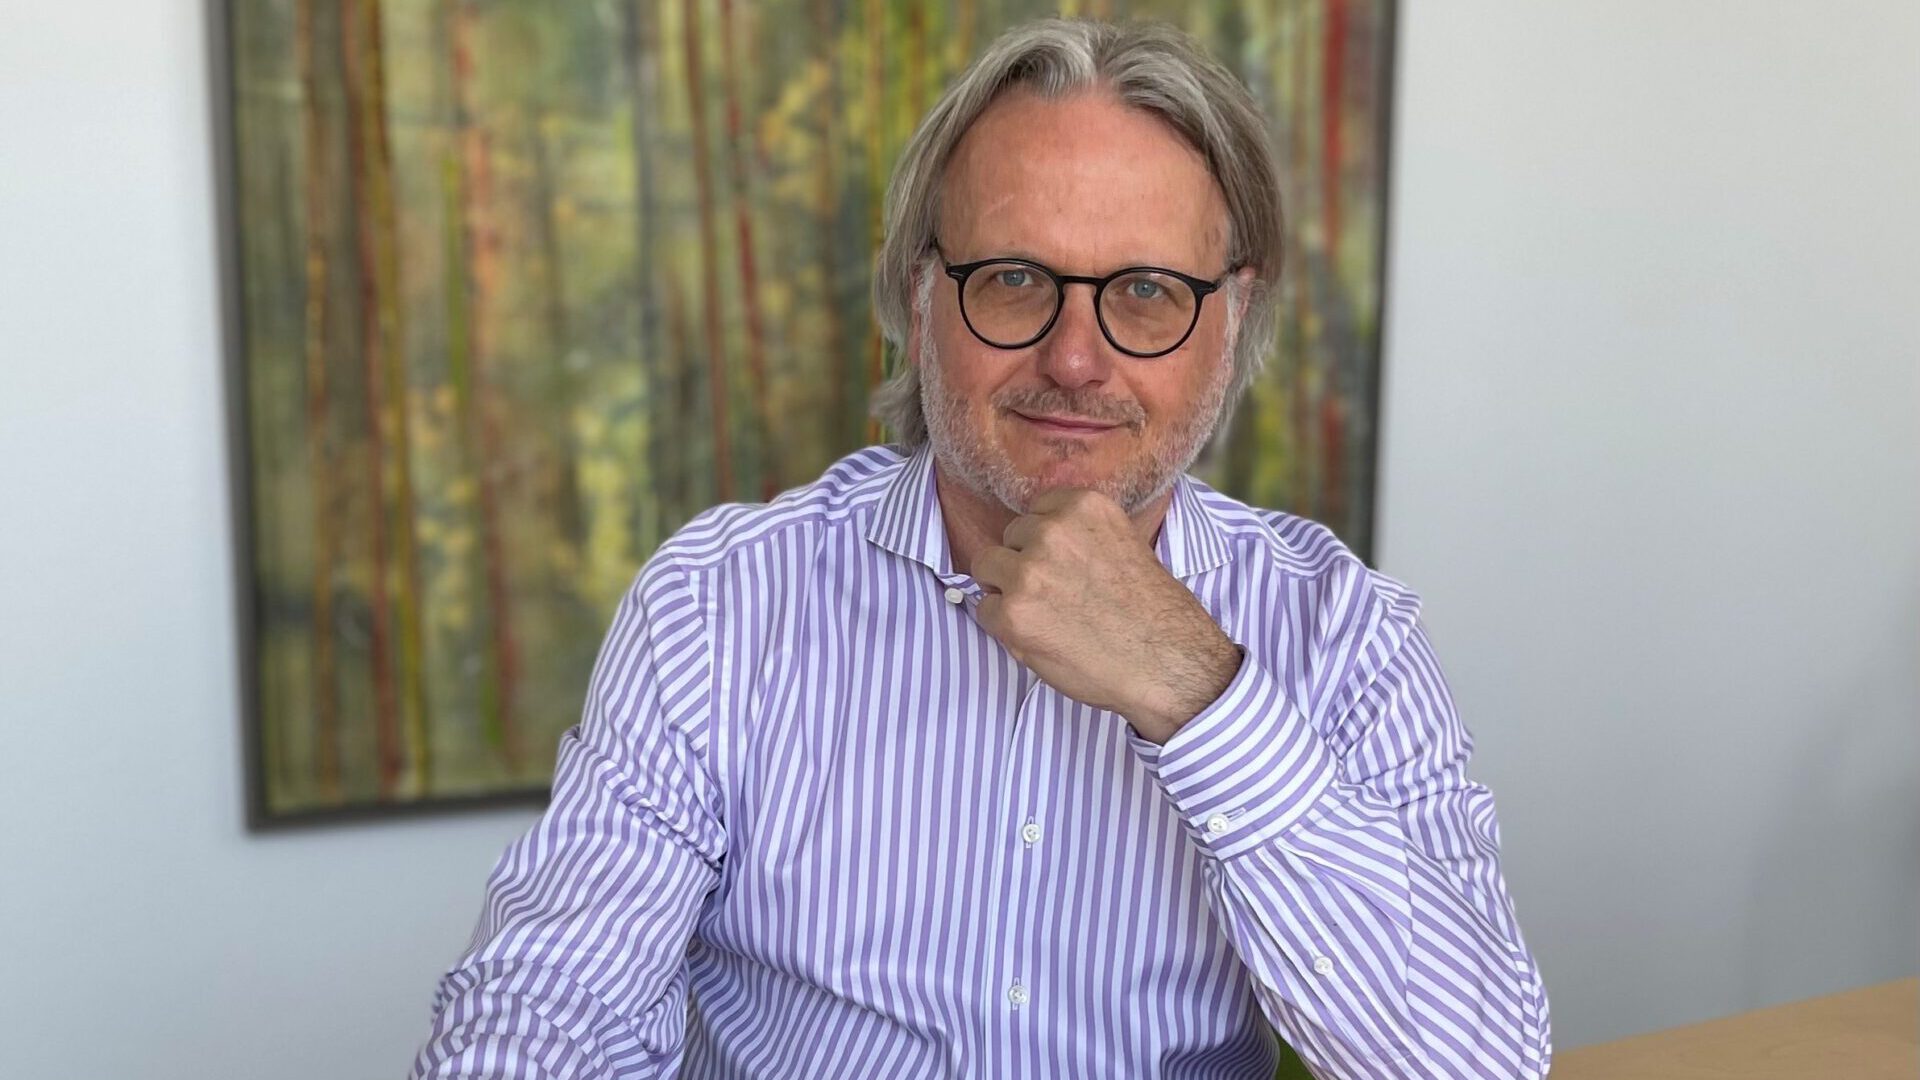 Frank Schübel im Interview | CEO – Teekanne GmbH & Co. KG